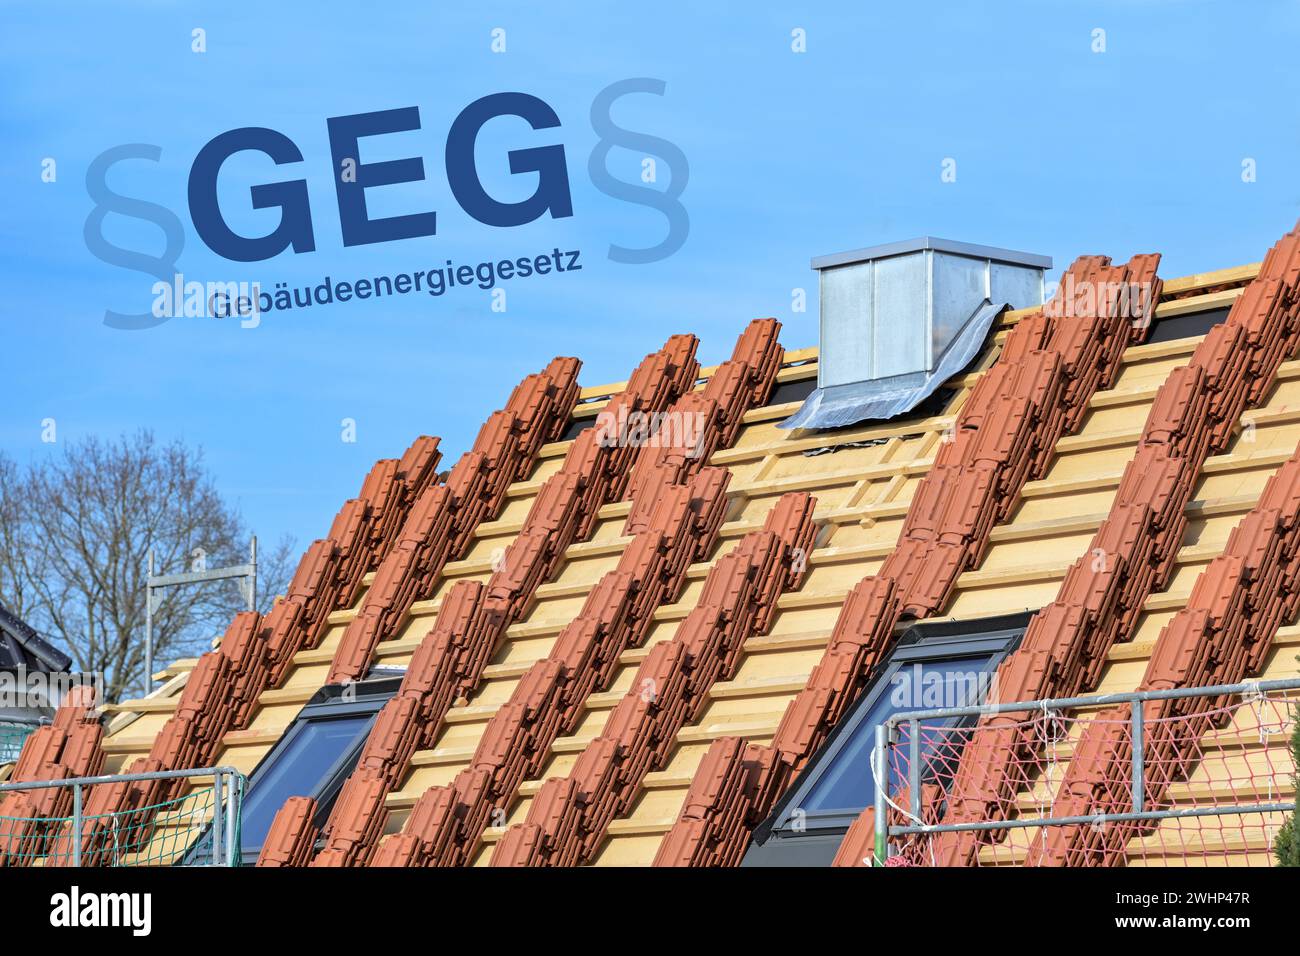 Le toit de la maison est nouvellement couvert pour le Gebaeudeeneregesetz allemand (GEG), ce qui signifie droit de l'énergie du bâtiment, les bâtiments plus anciens doivent être INS Banque D'Images